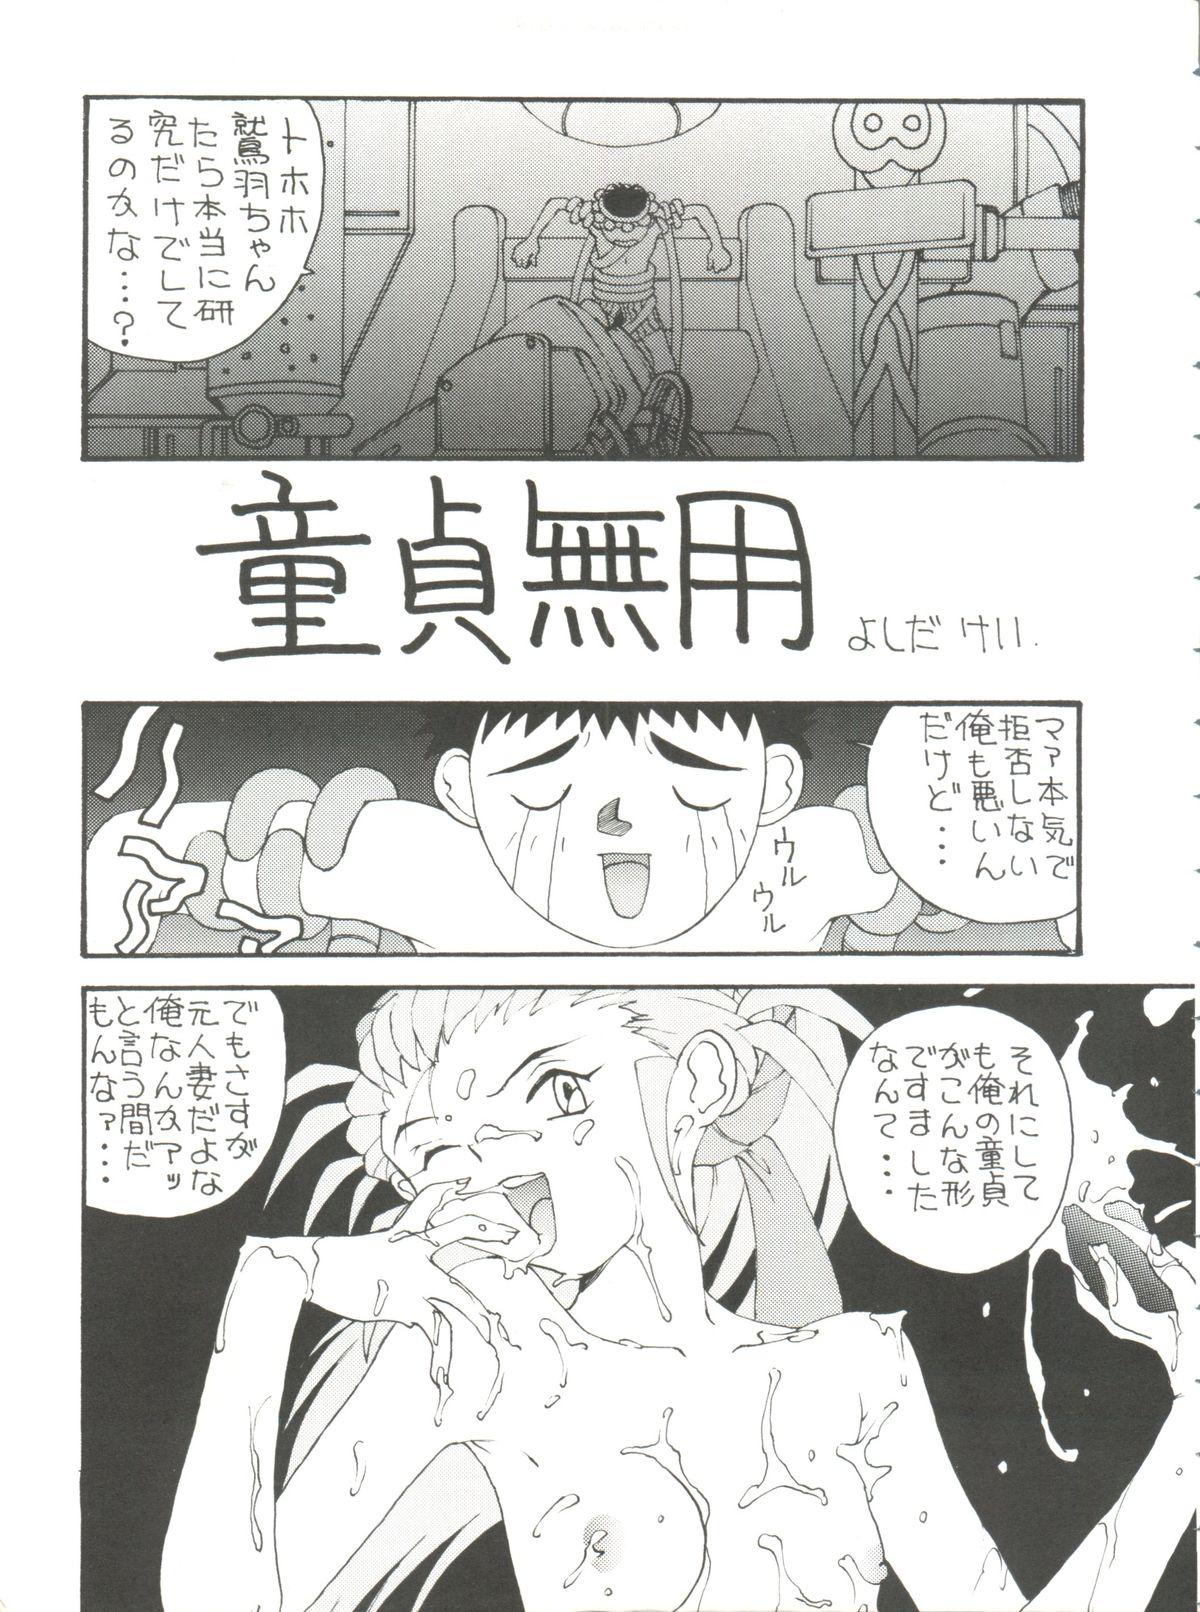 Orgia Toufuya Kyuuchou - Tenchi muyo Gundam wing Macross 7 Wedding peach Dominicana - Page 8